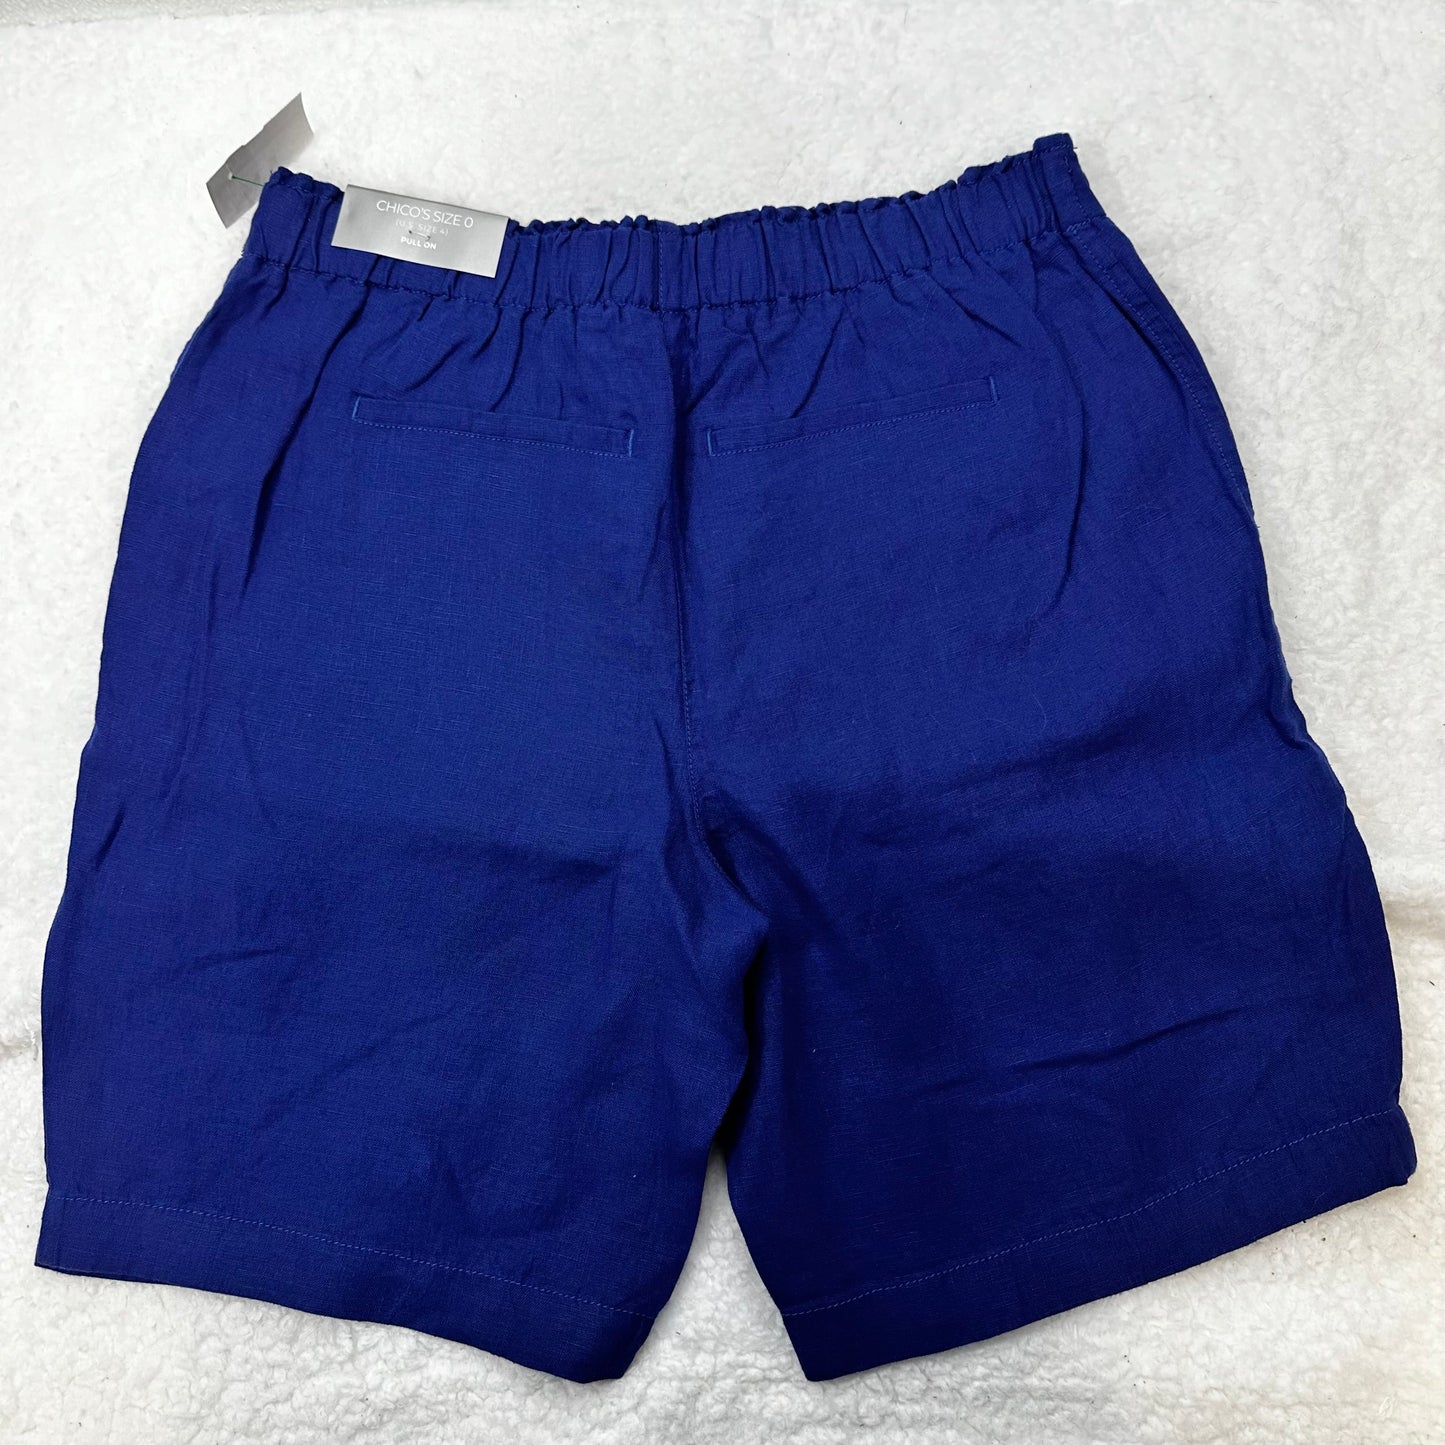 Royal Blue Shorts Chicos O, Size 4